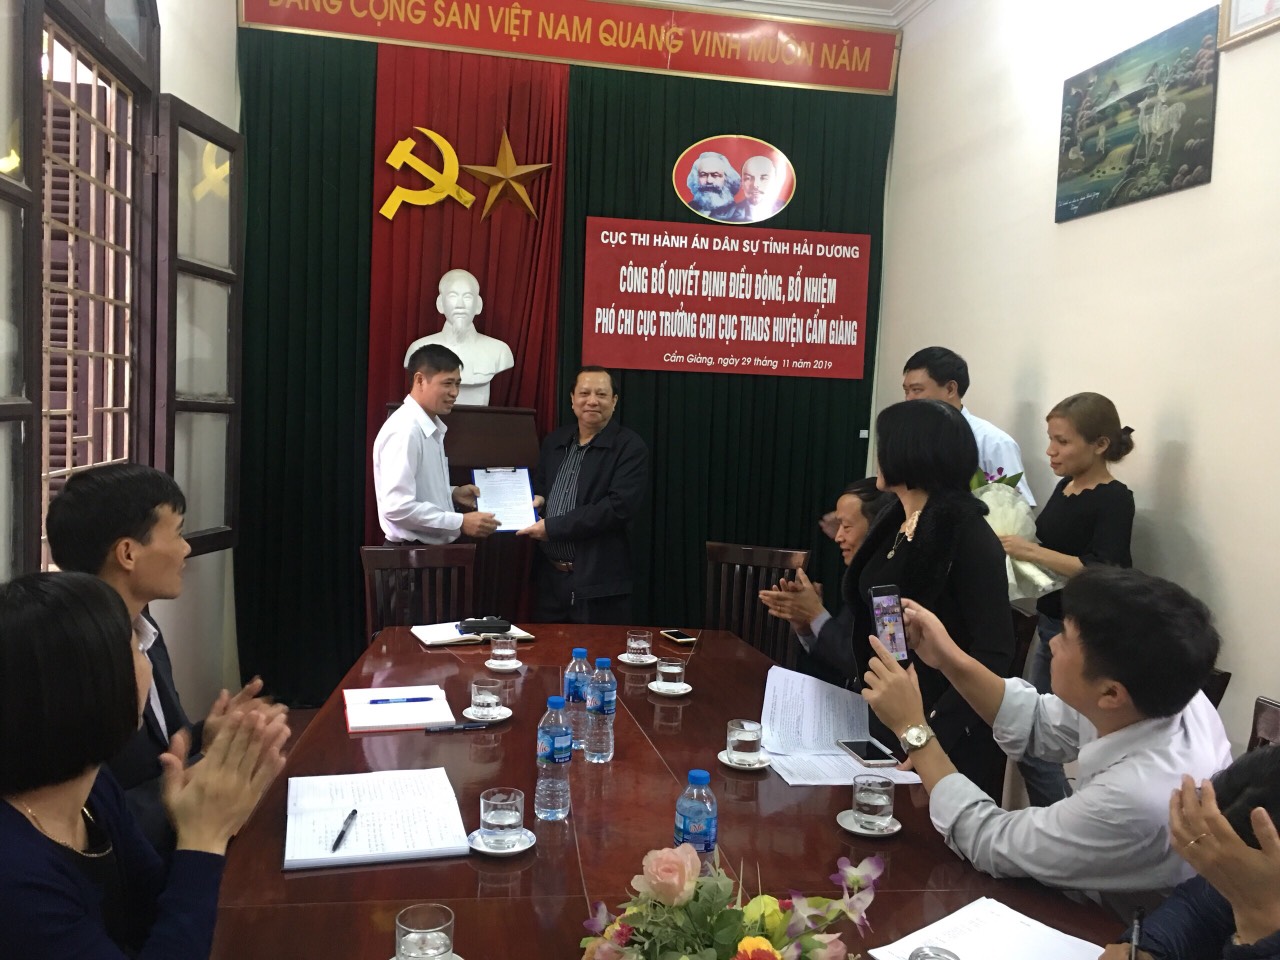 Cục THADS tỉnh Hải Dương công bố quyết định điều động, bổ nhiệm Phó Chi cục trưởng Chi cụcThi hành án dân sự huyện Cẩm Giàng, tỉnh Hải Dương.